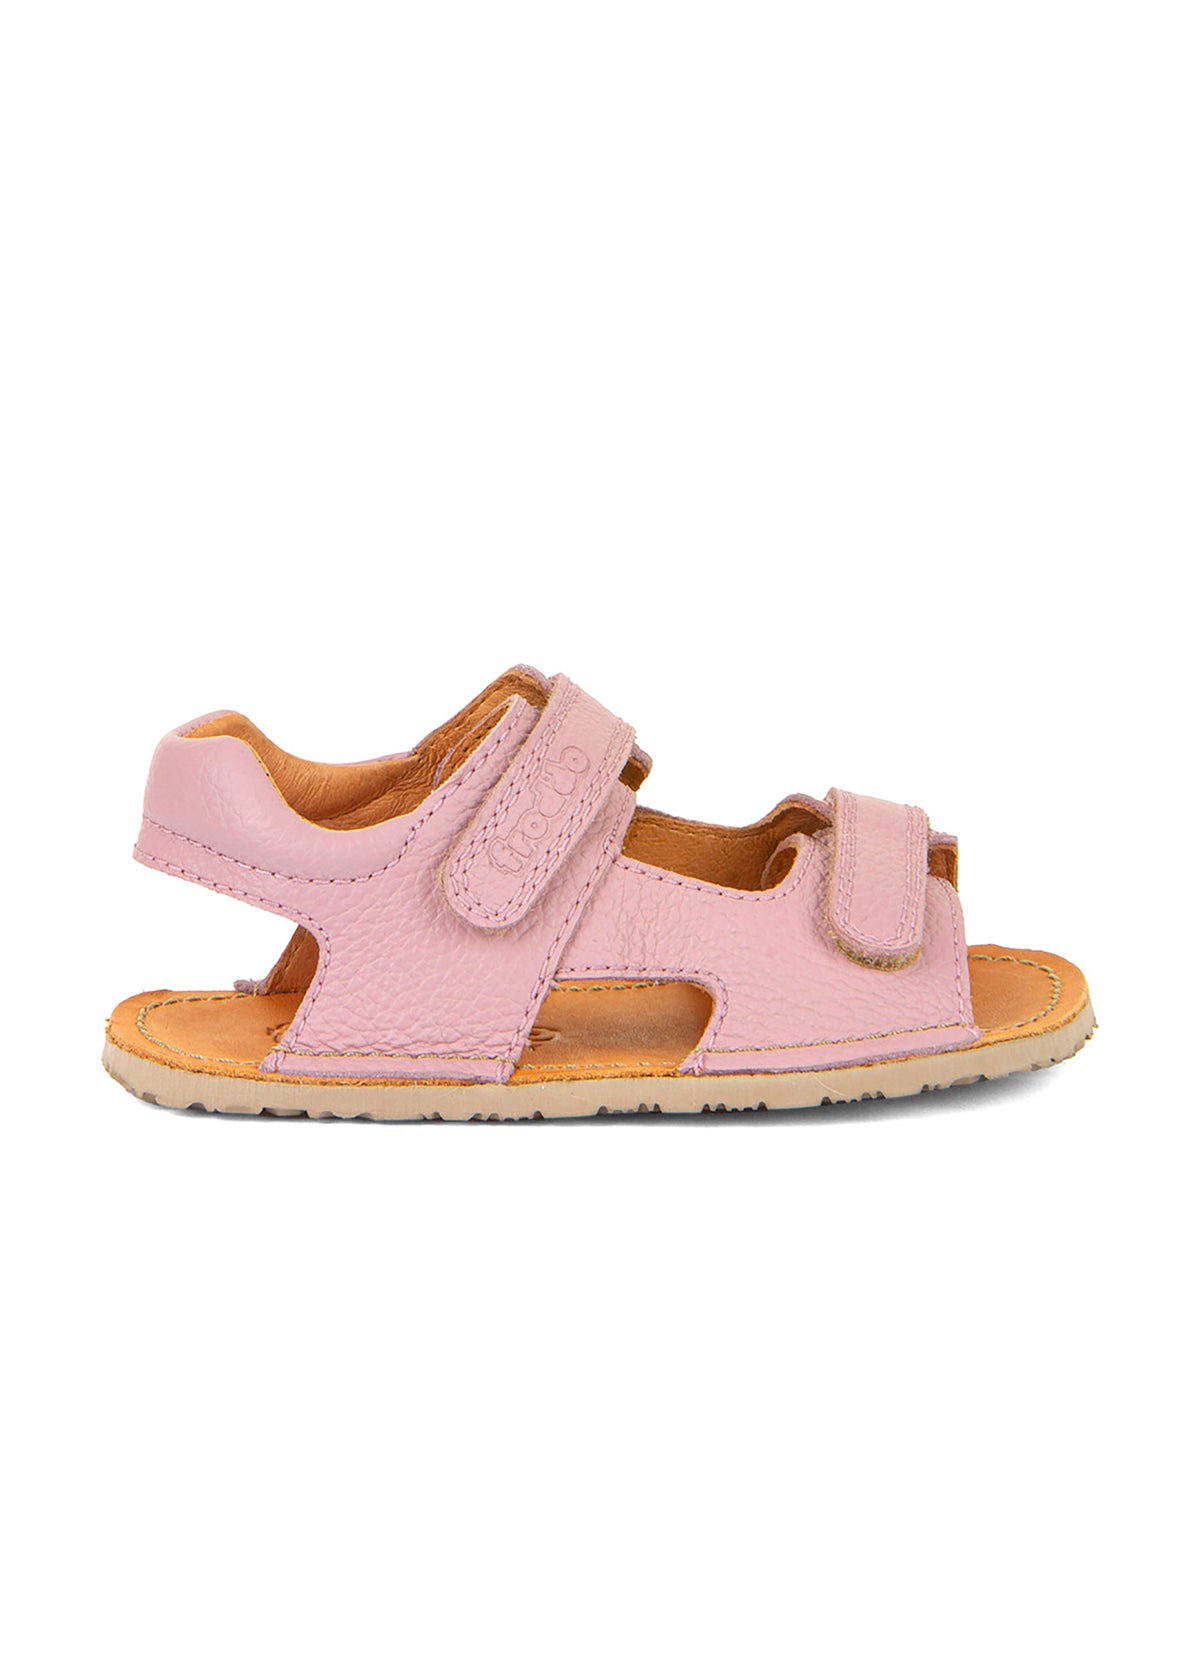 Children's barefoot sandals, Flexy Mini - pink